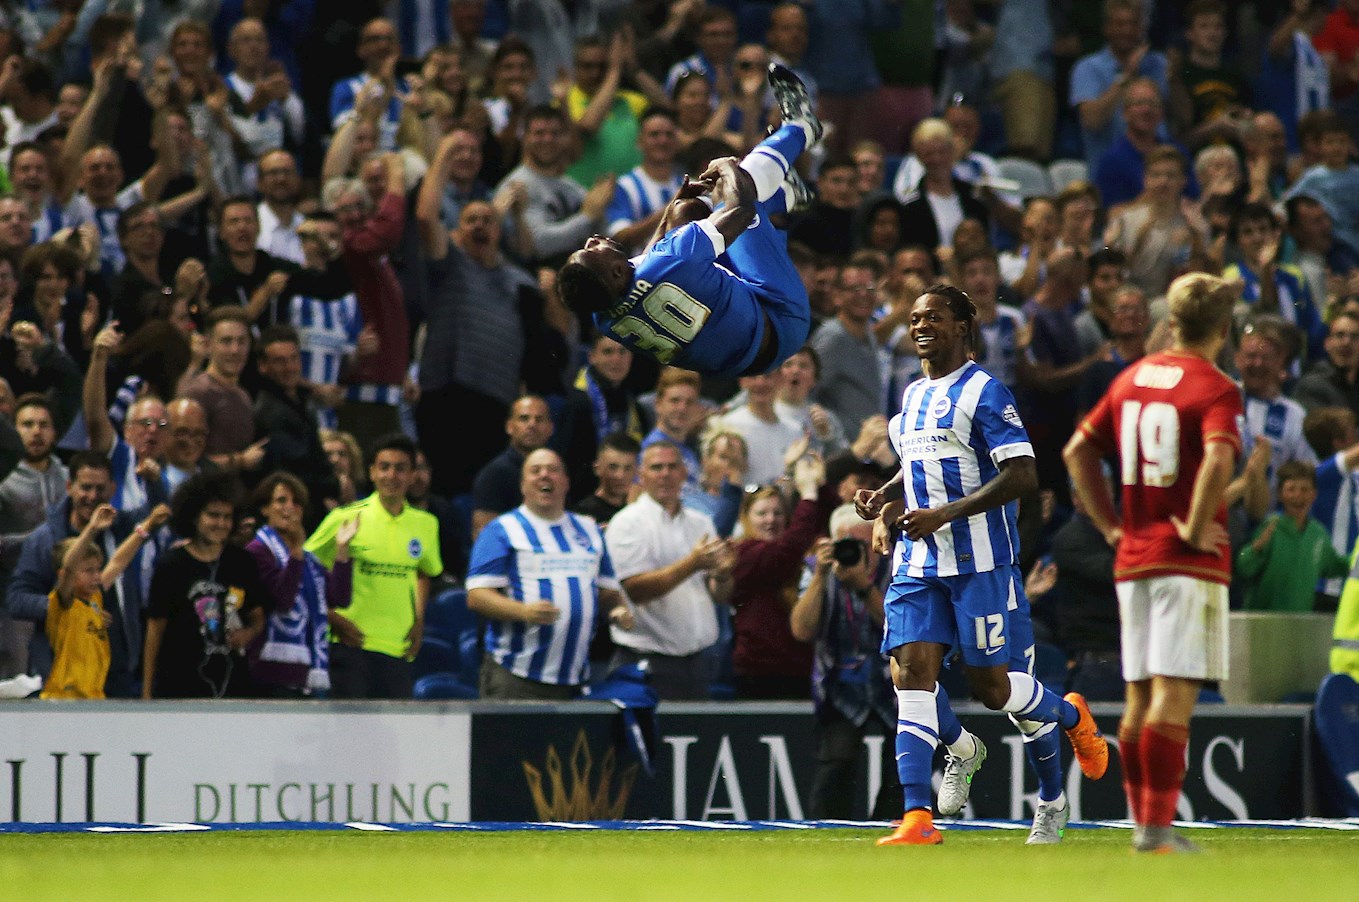 Kazenga LuaLua celebrates a goal for Brighton in acrobatic style